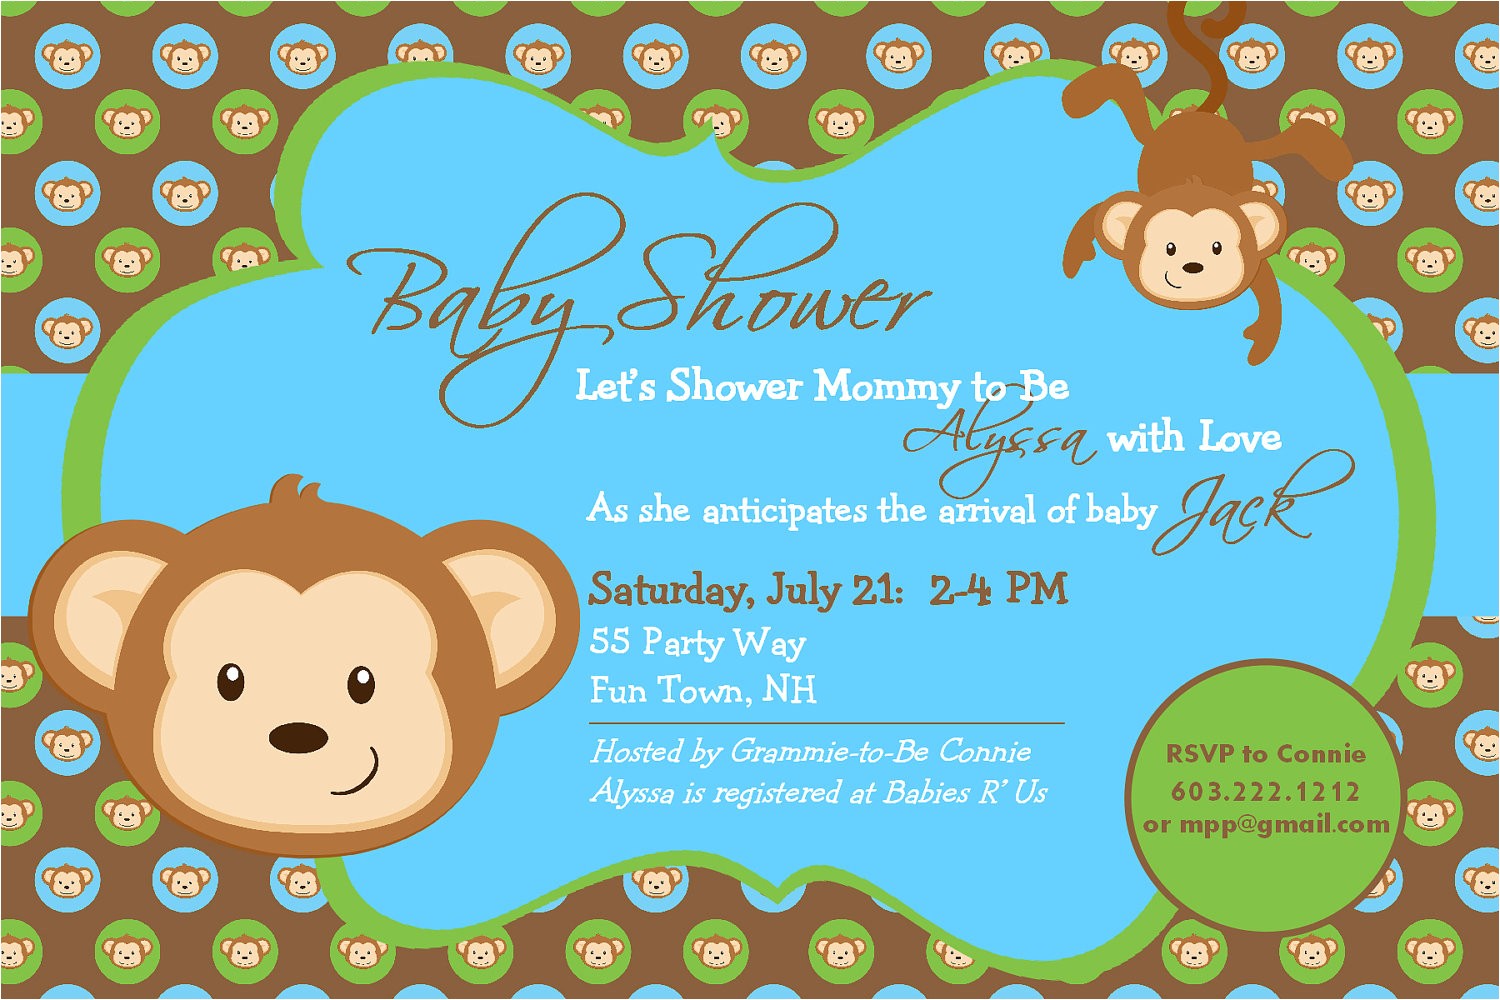 Monkey themed Baby Shower Invitations Printable Monkey Baby Shower Invitation Boy Invitation Monkey Shower